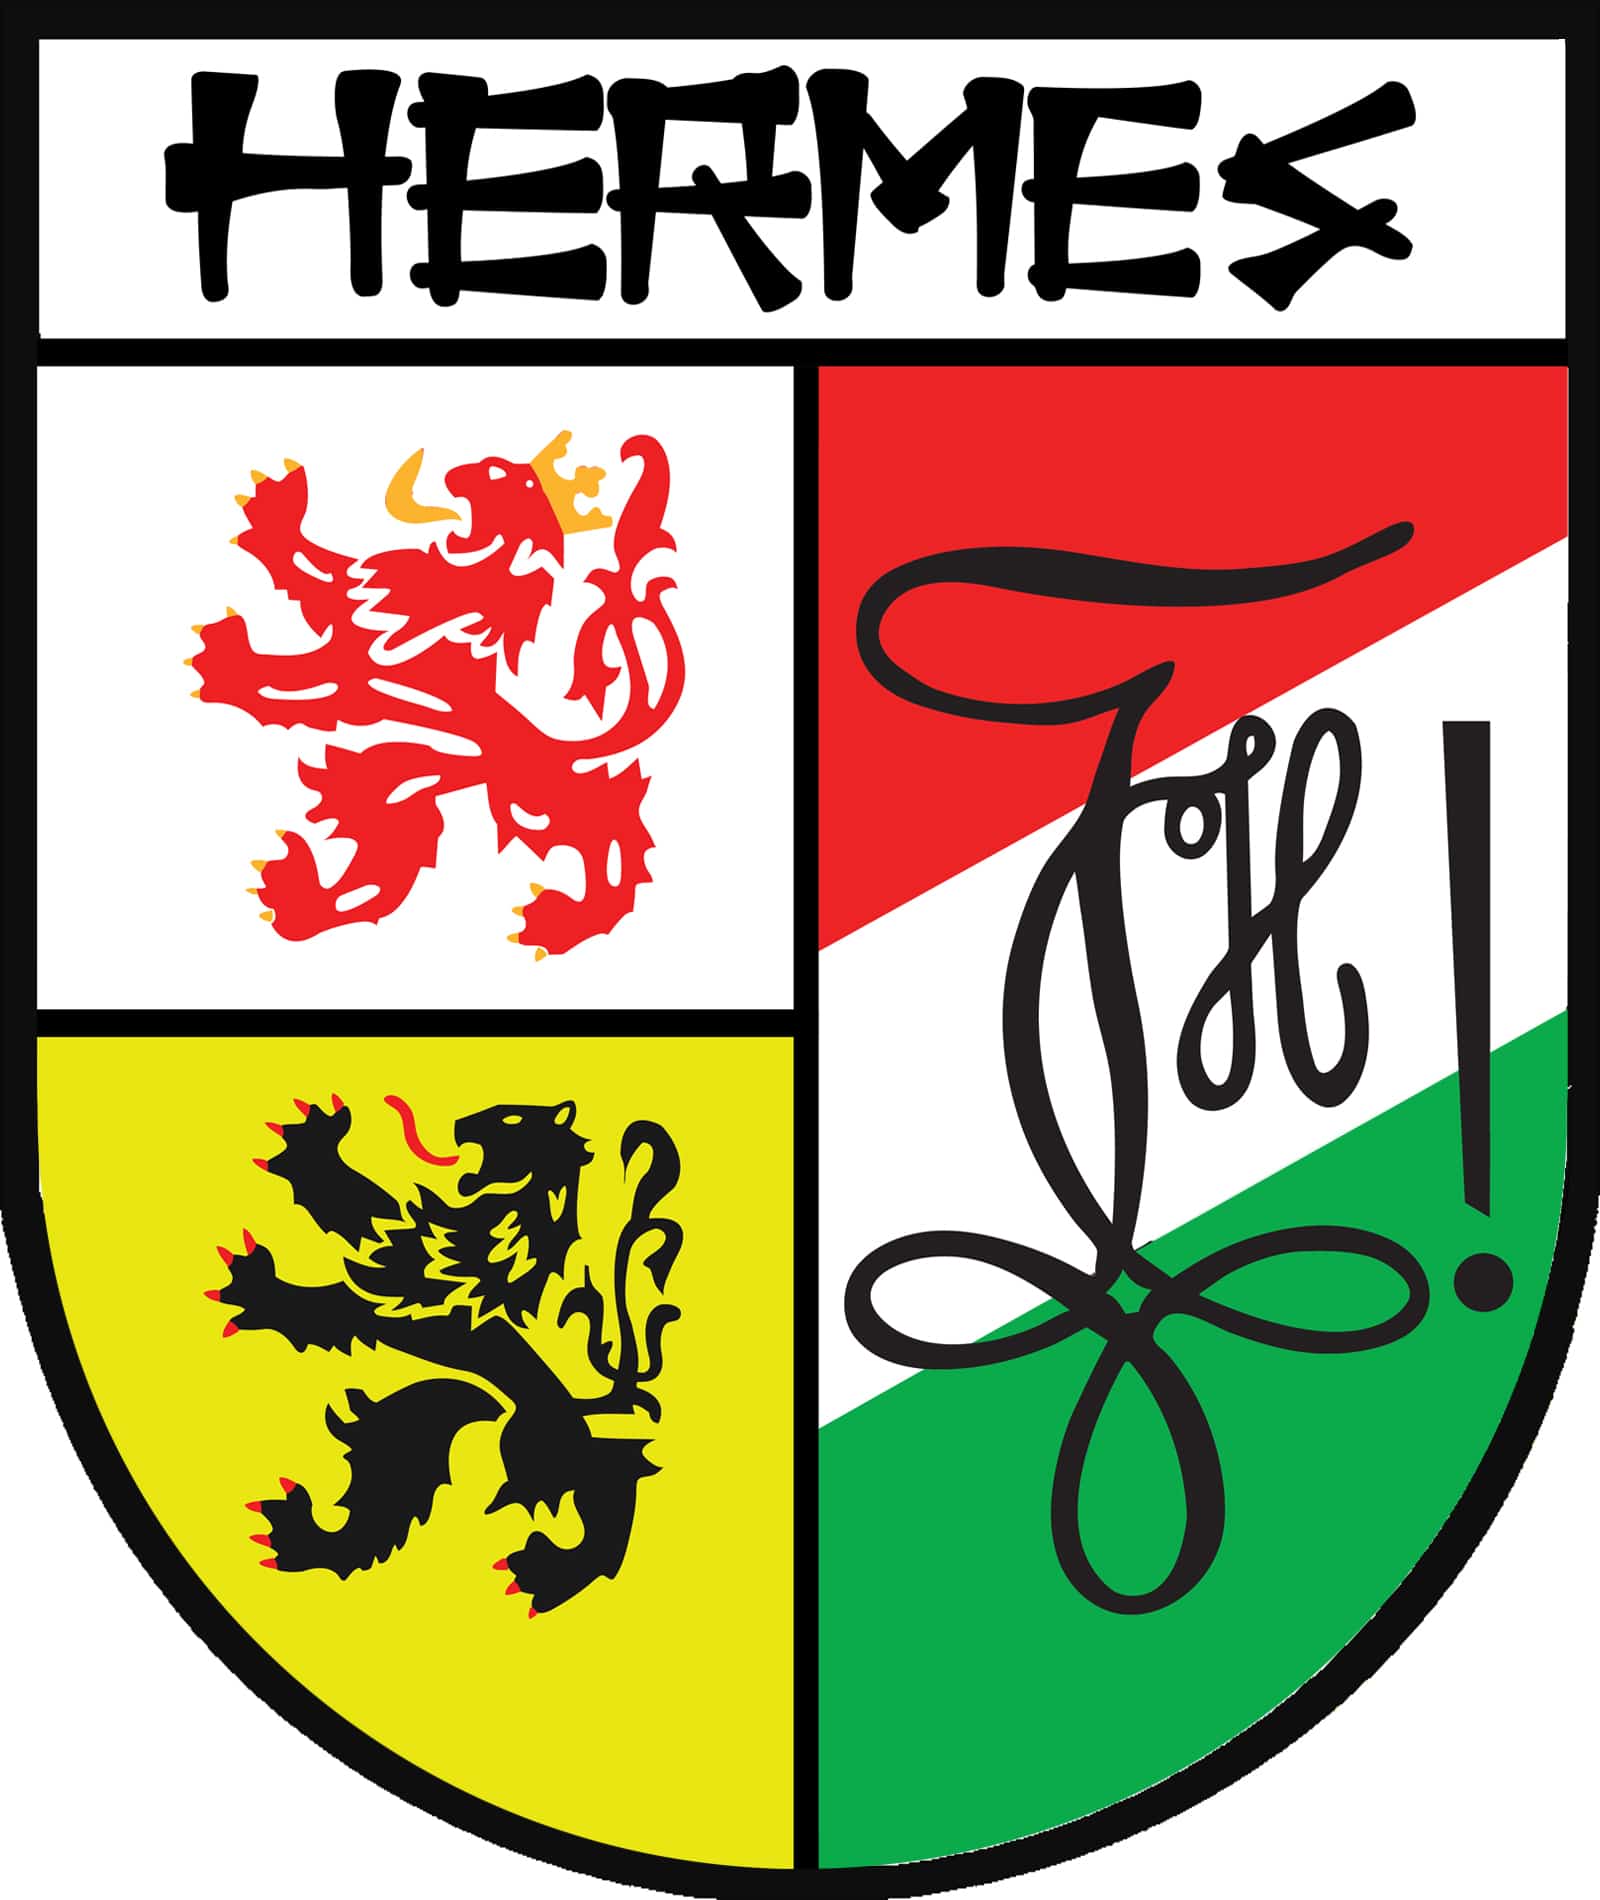 Hermes Diepenbeek